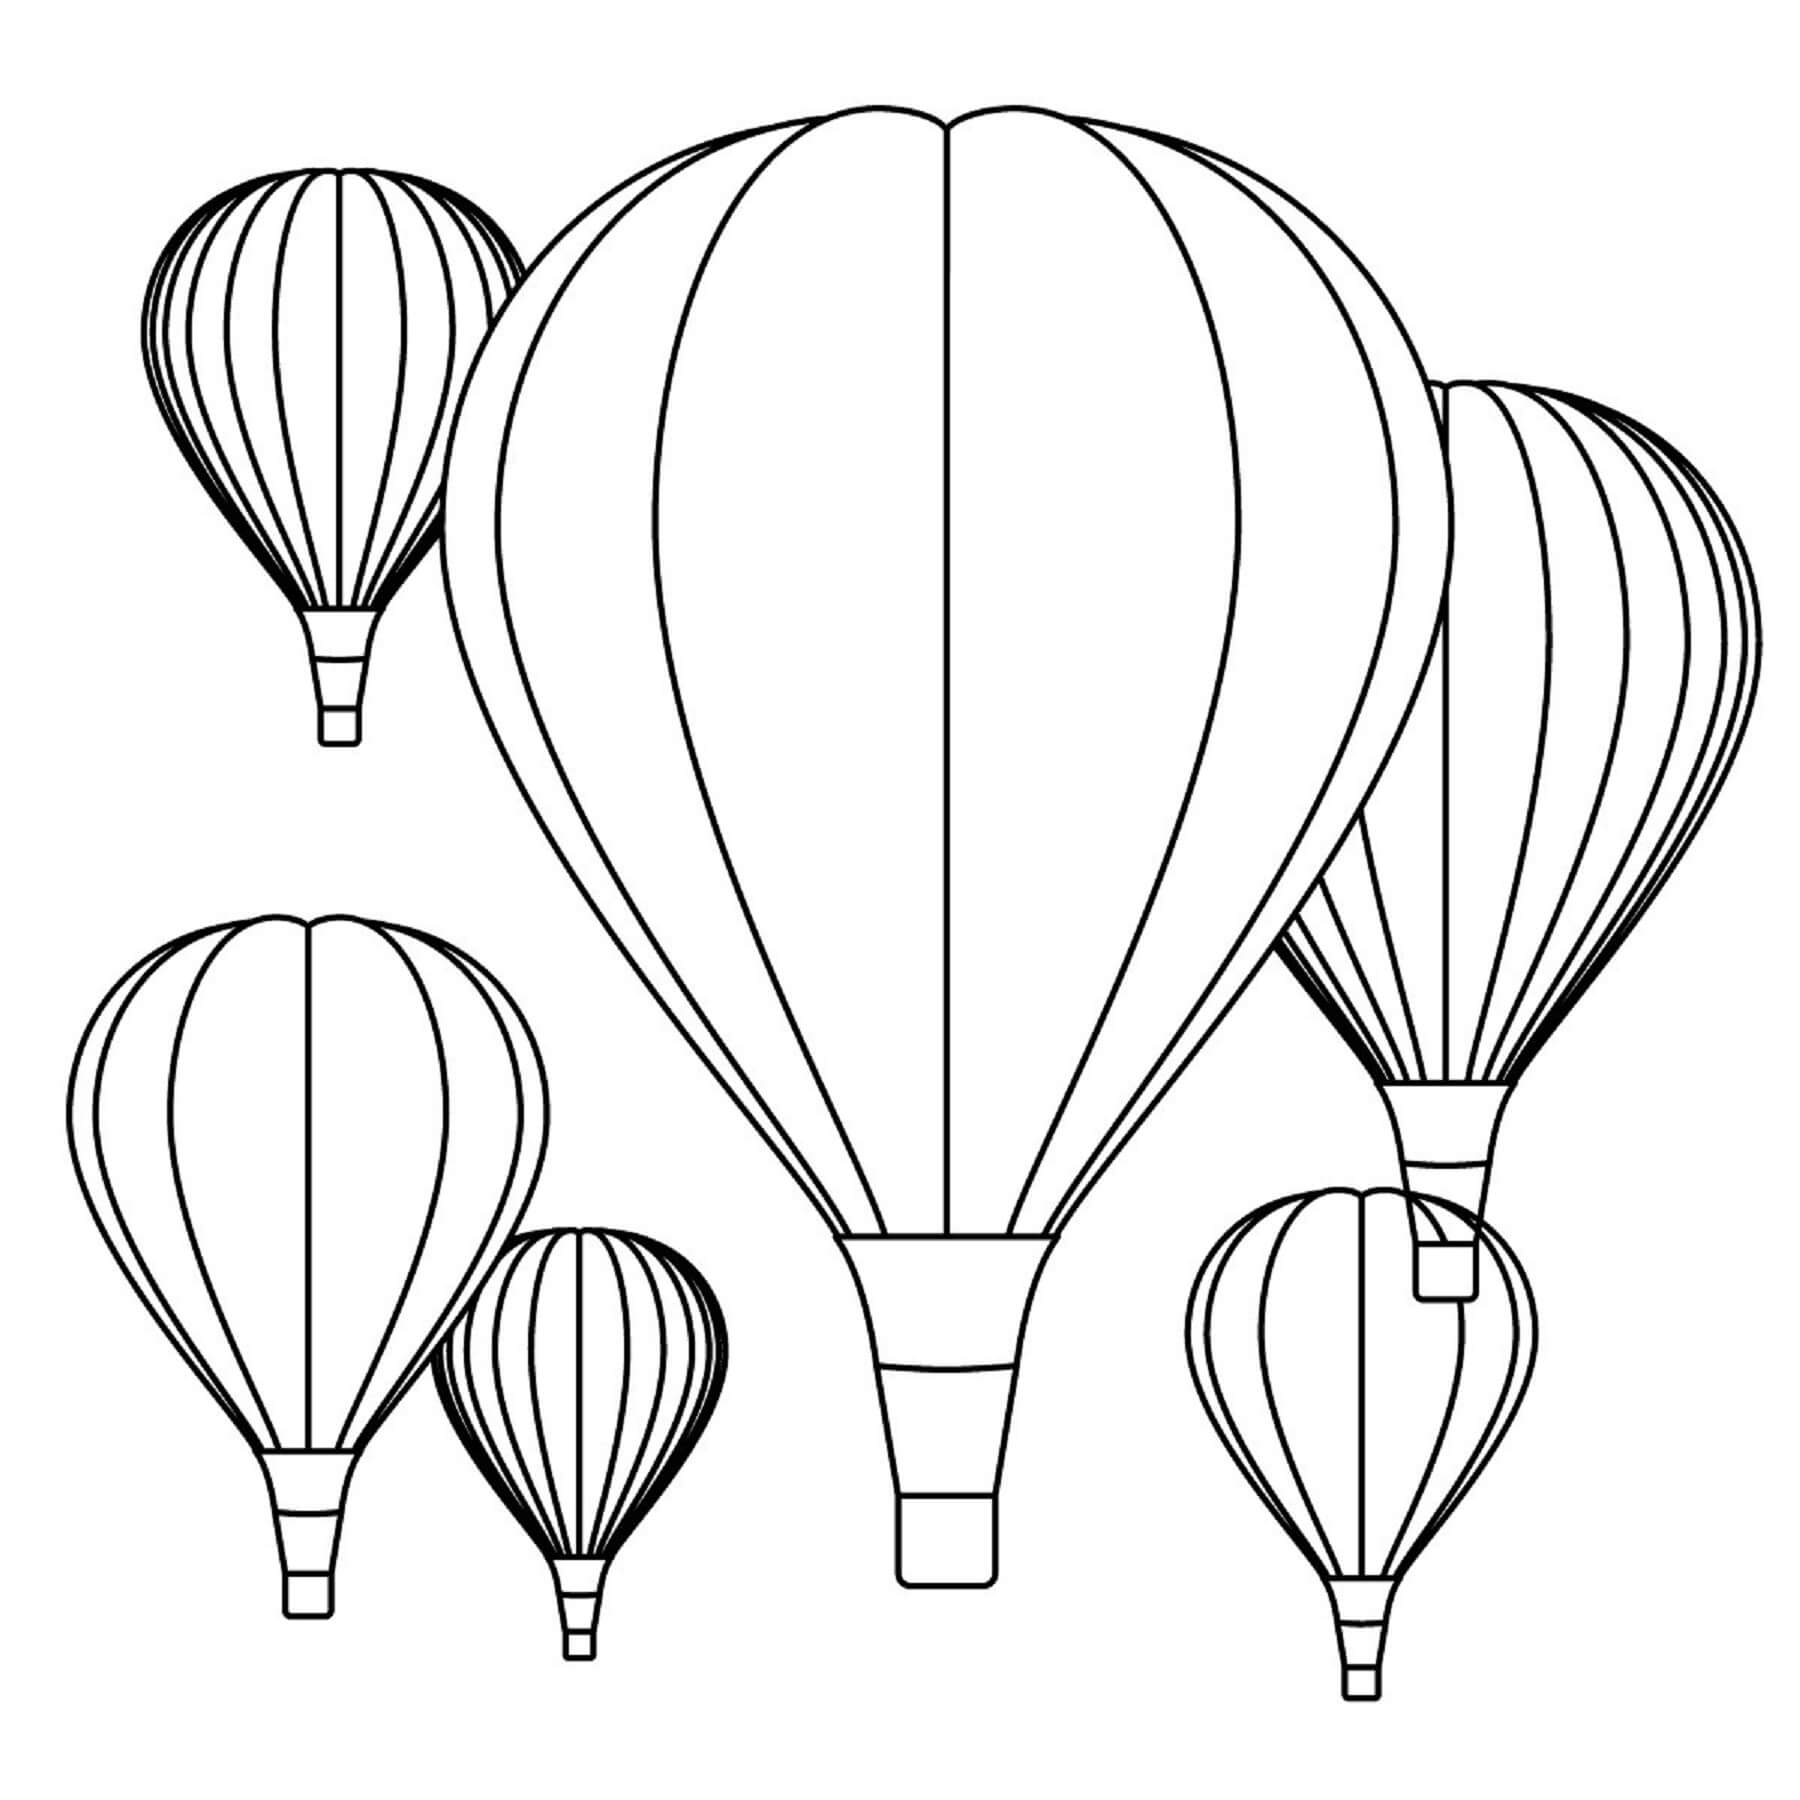 Seks Simple Varmluftsballoner Tegninger til Farvelægning